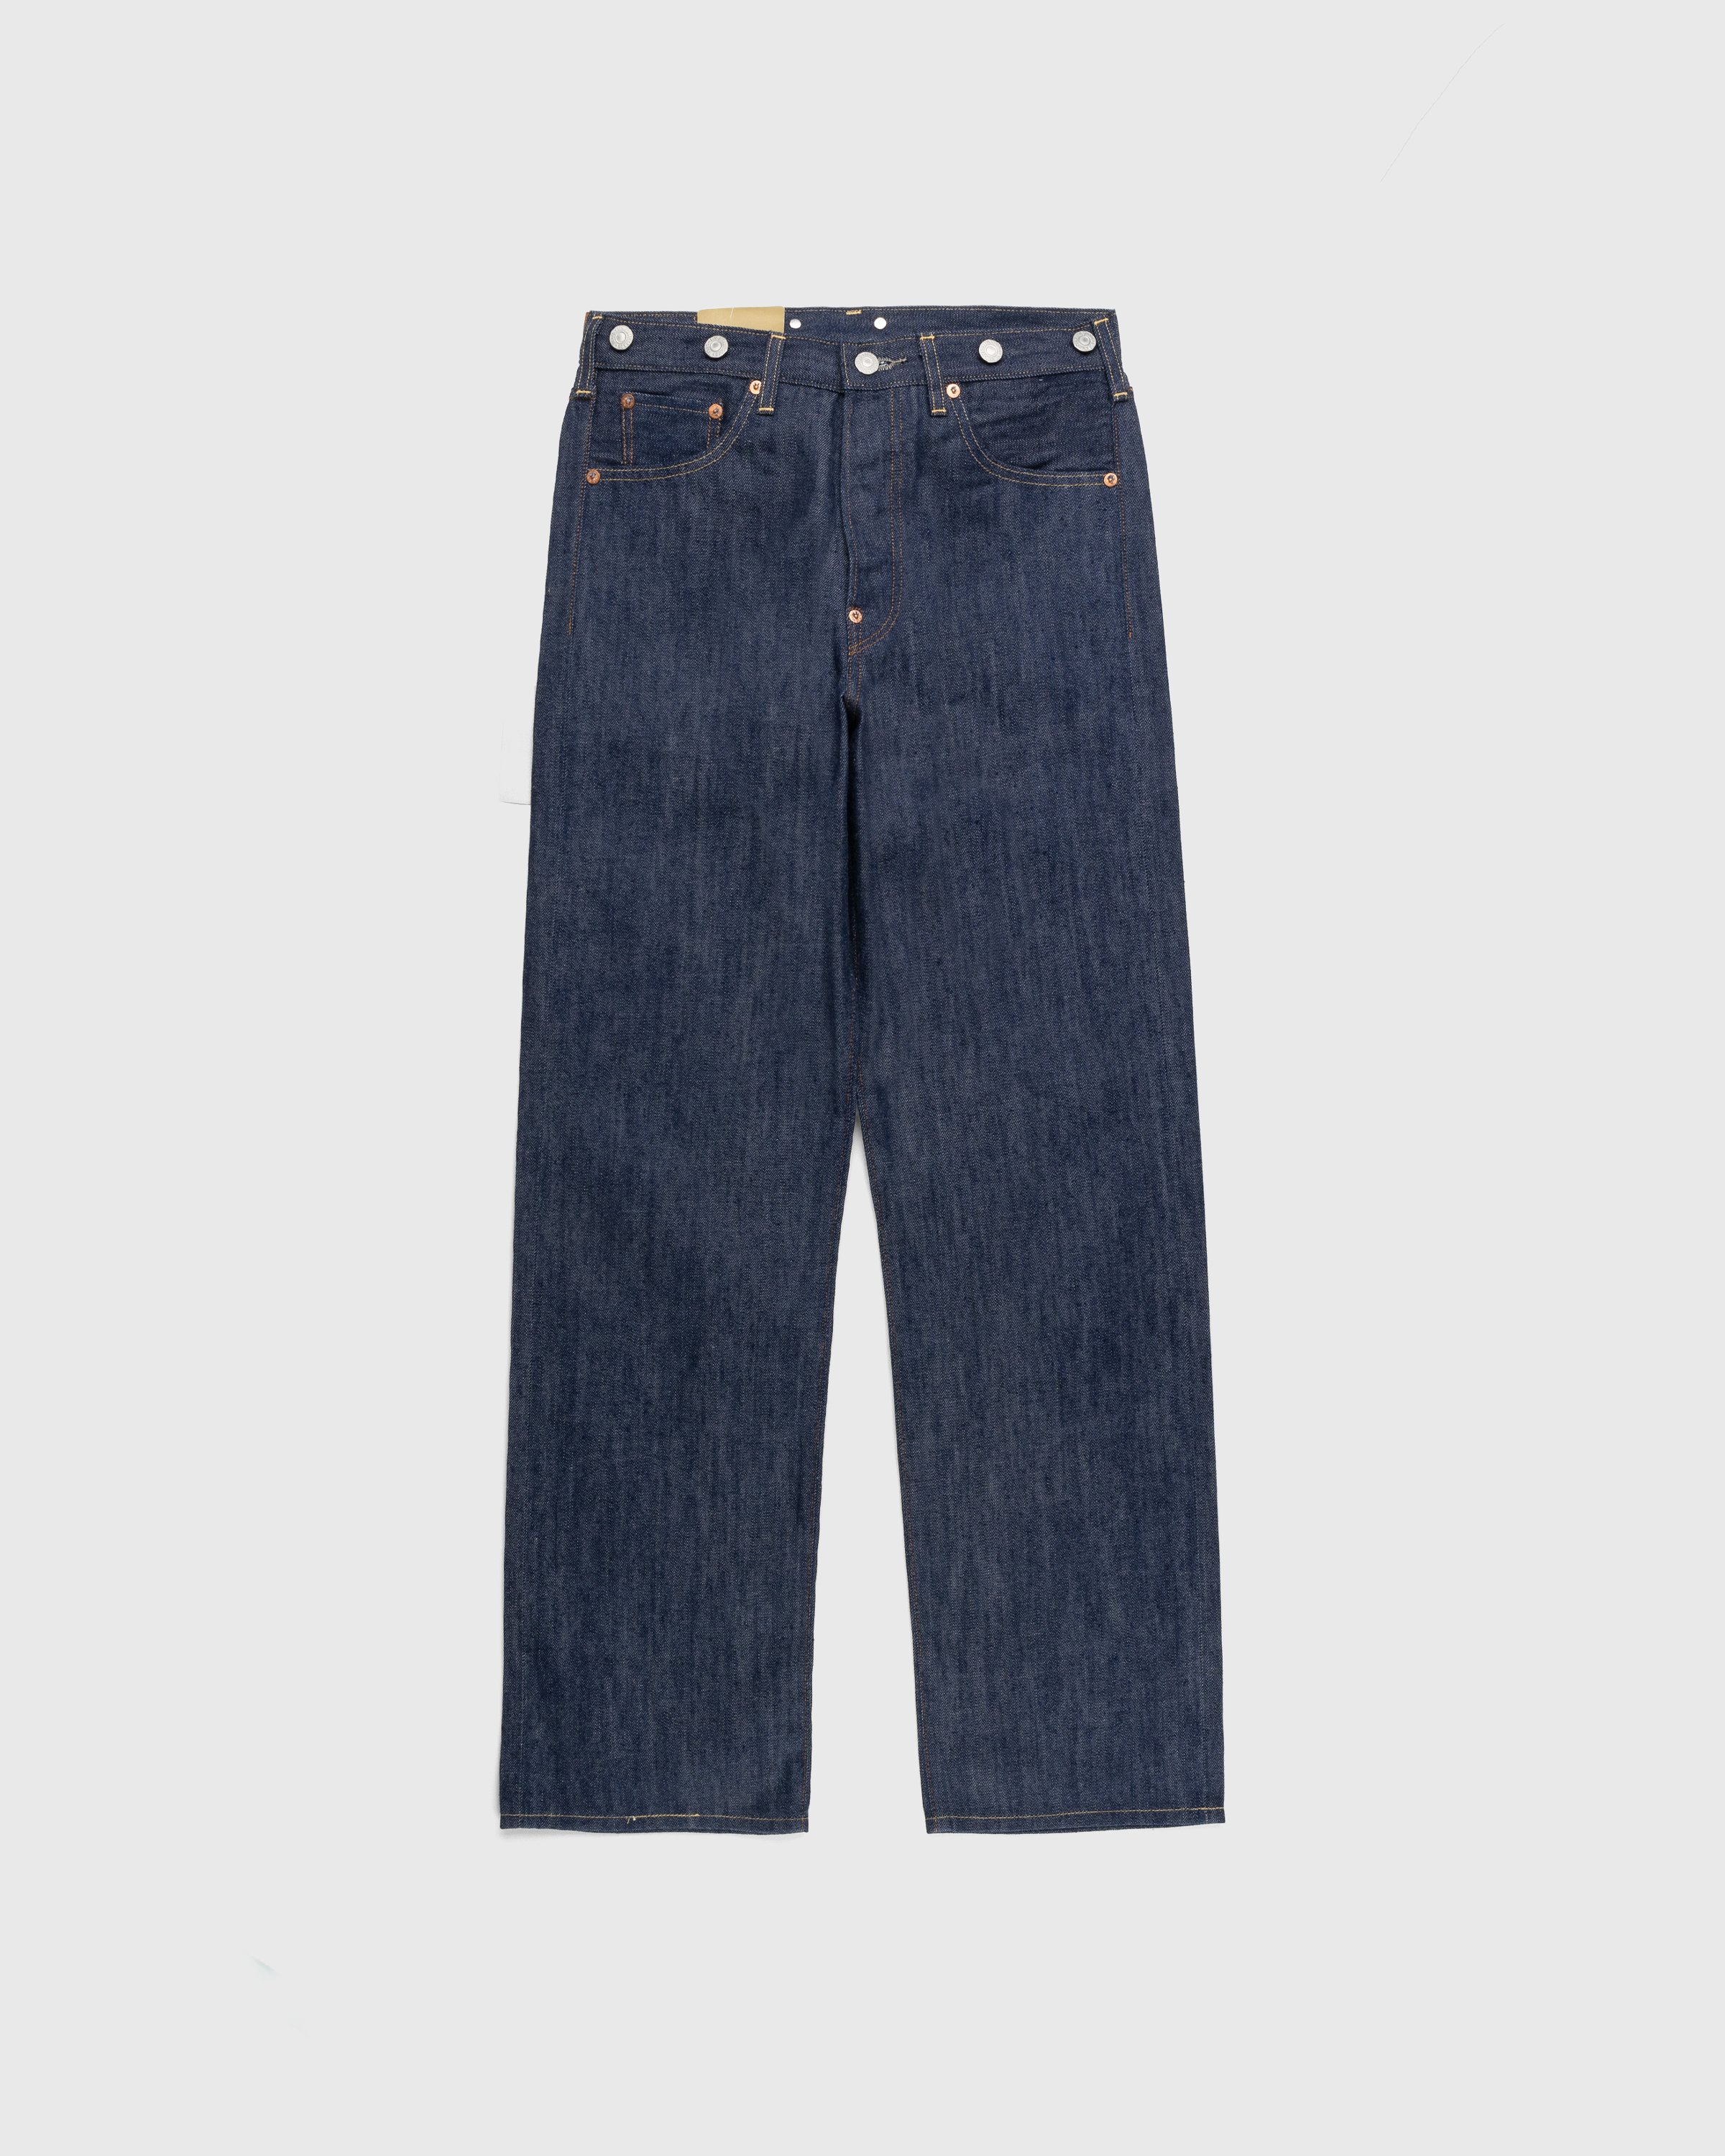 Levi's - 1922 501 Jeans Dark Indigo Flat Finish - Clothing - Blue - Image 1